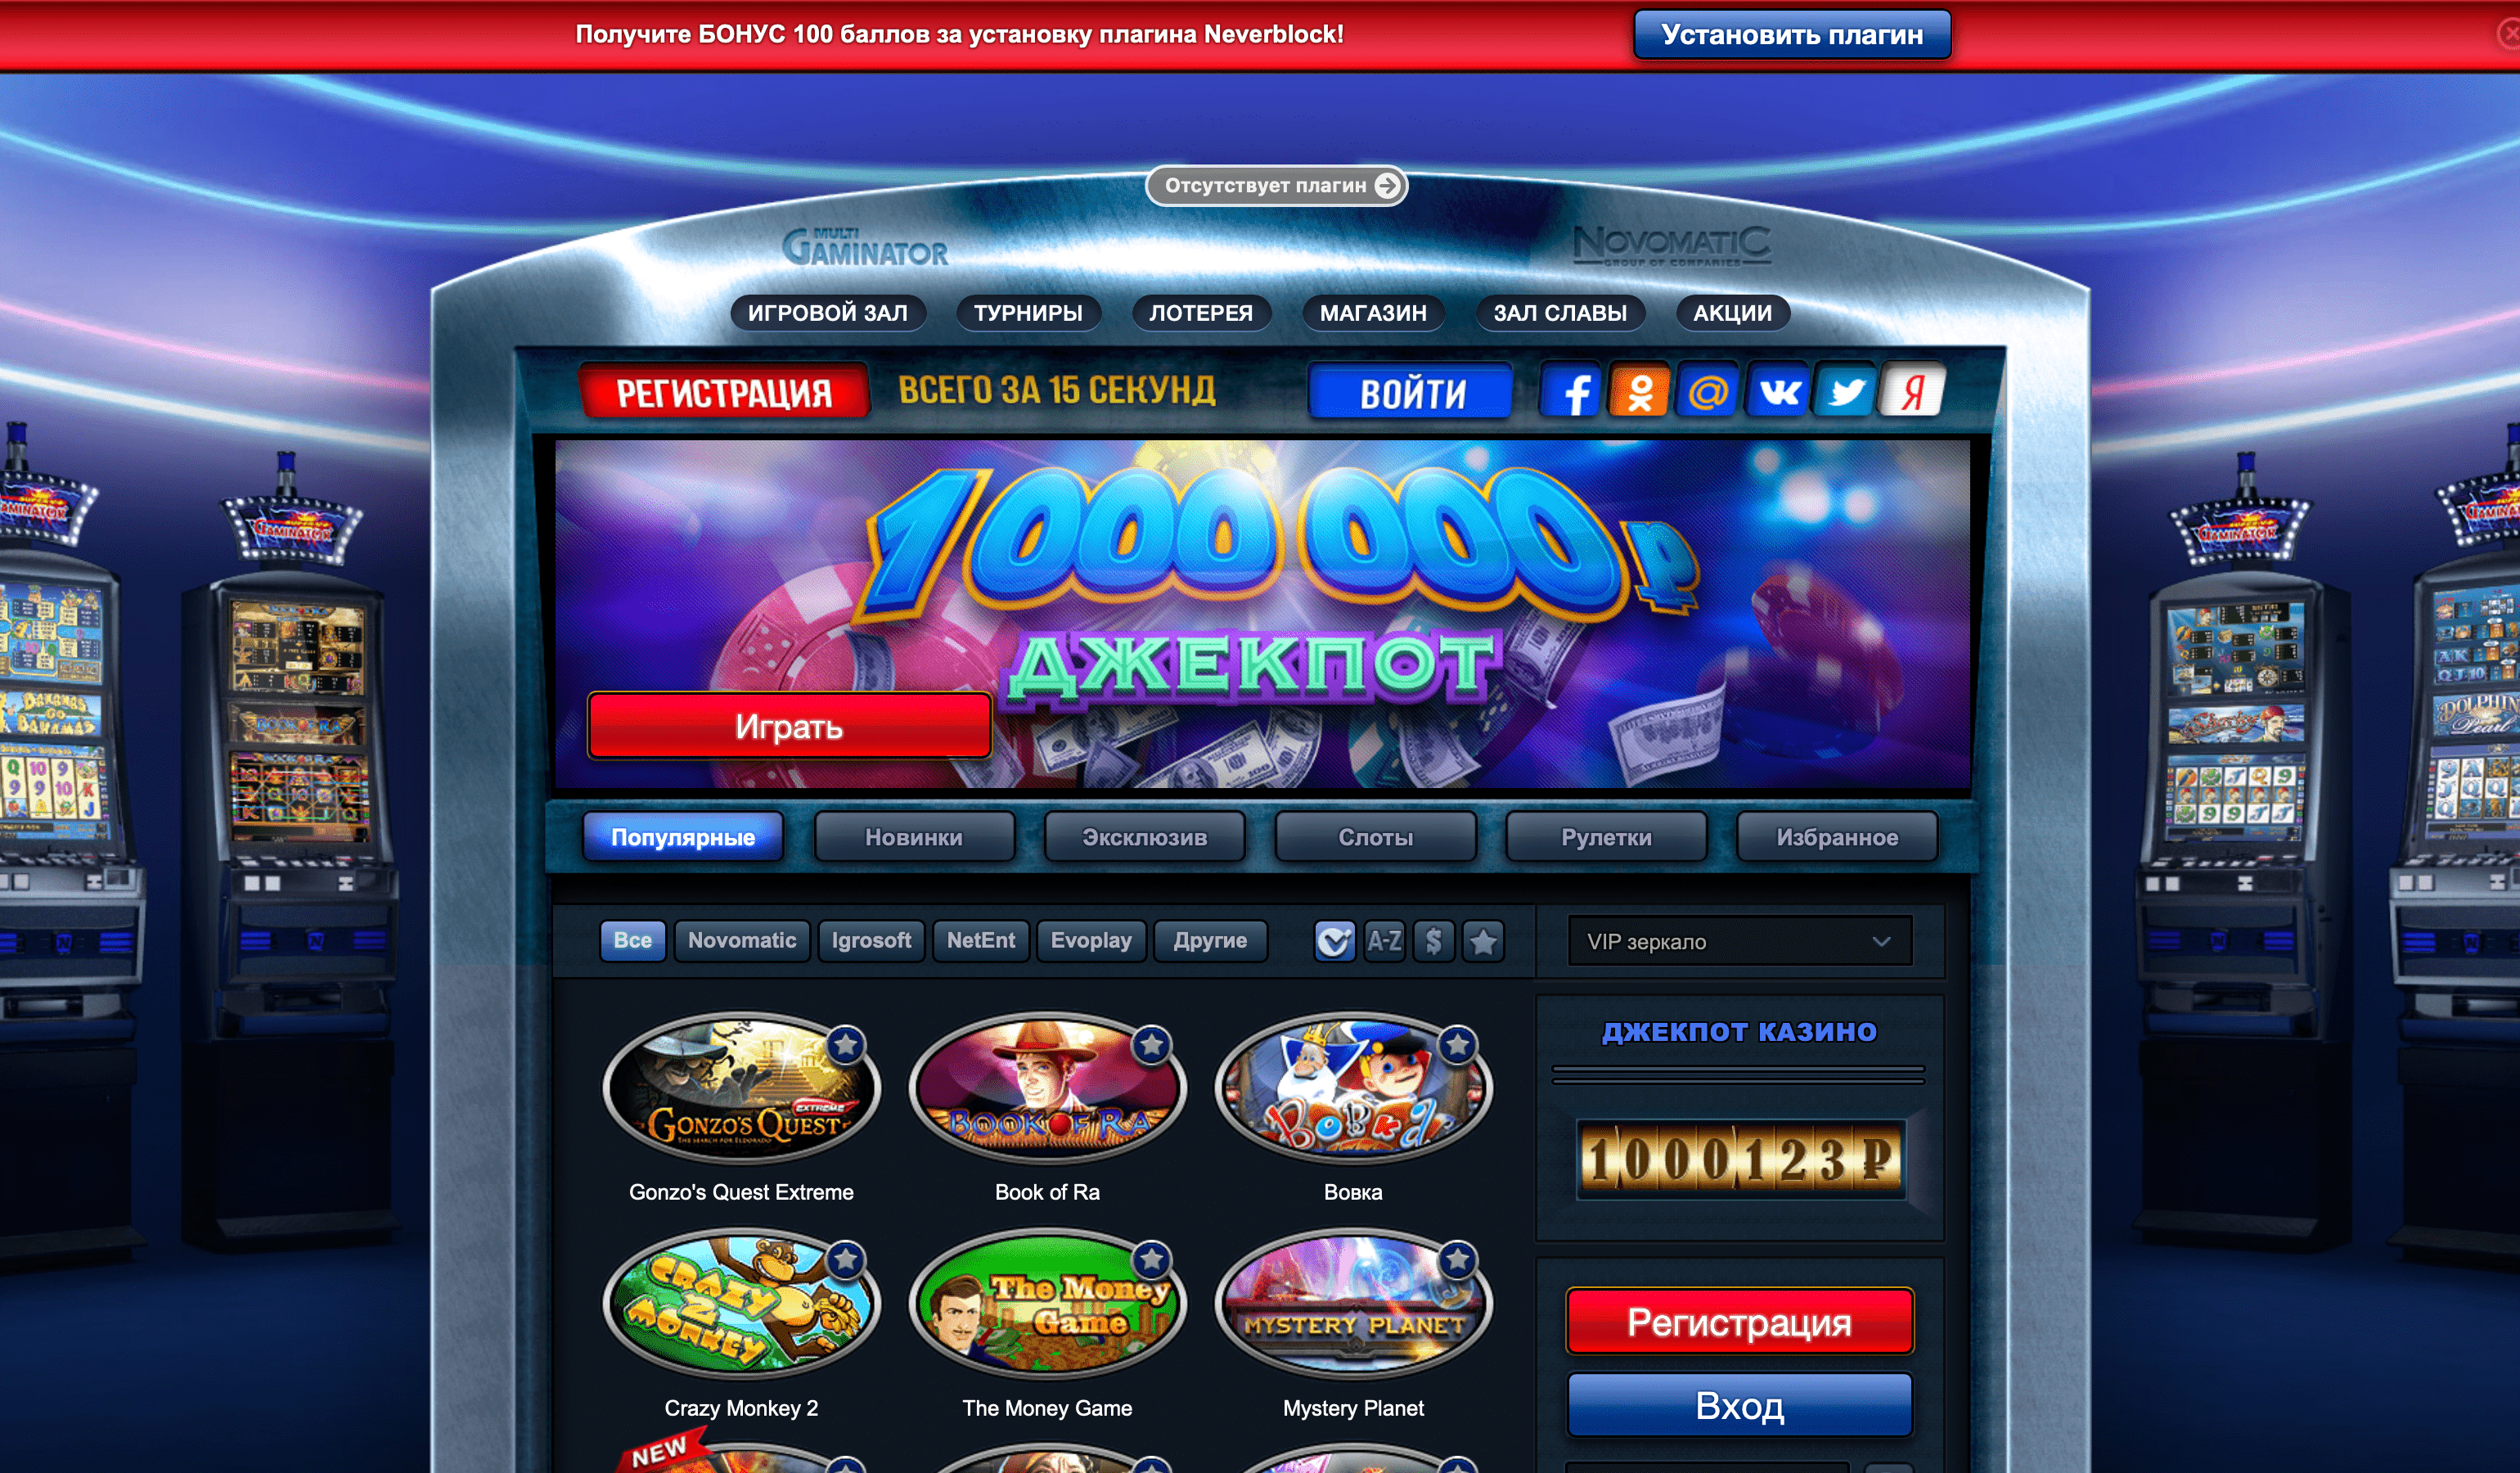 Официальный сайт казино GmsDeluxe